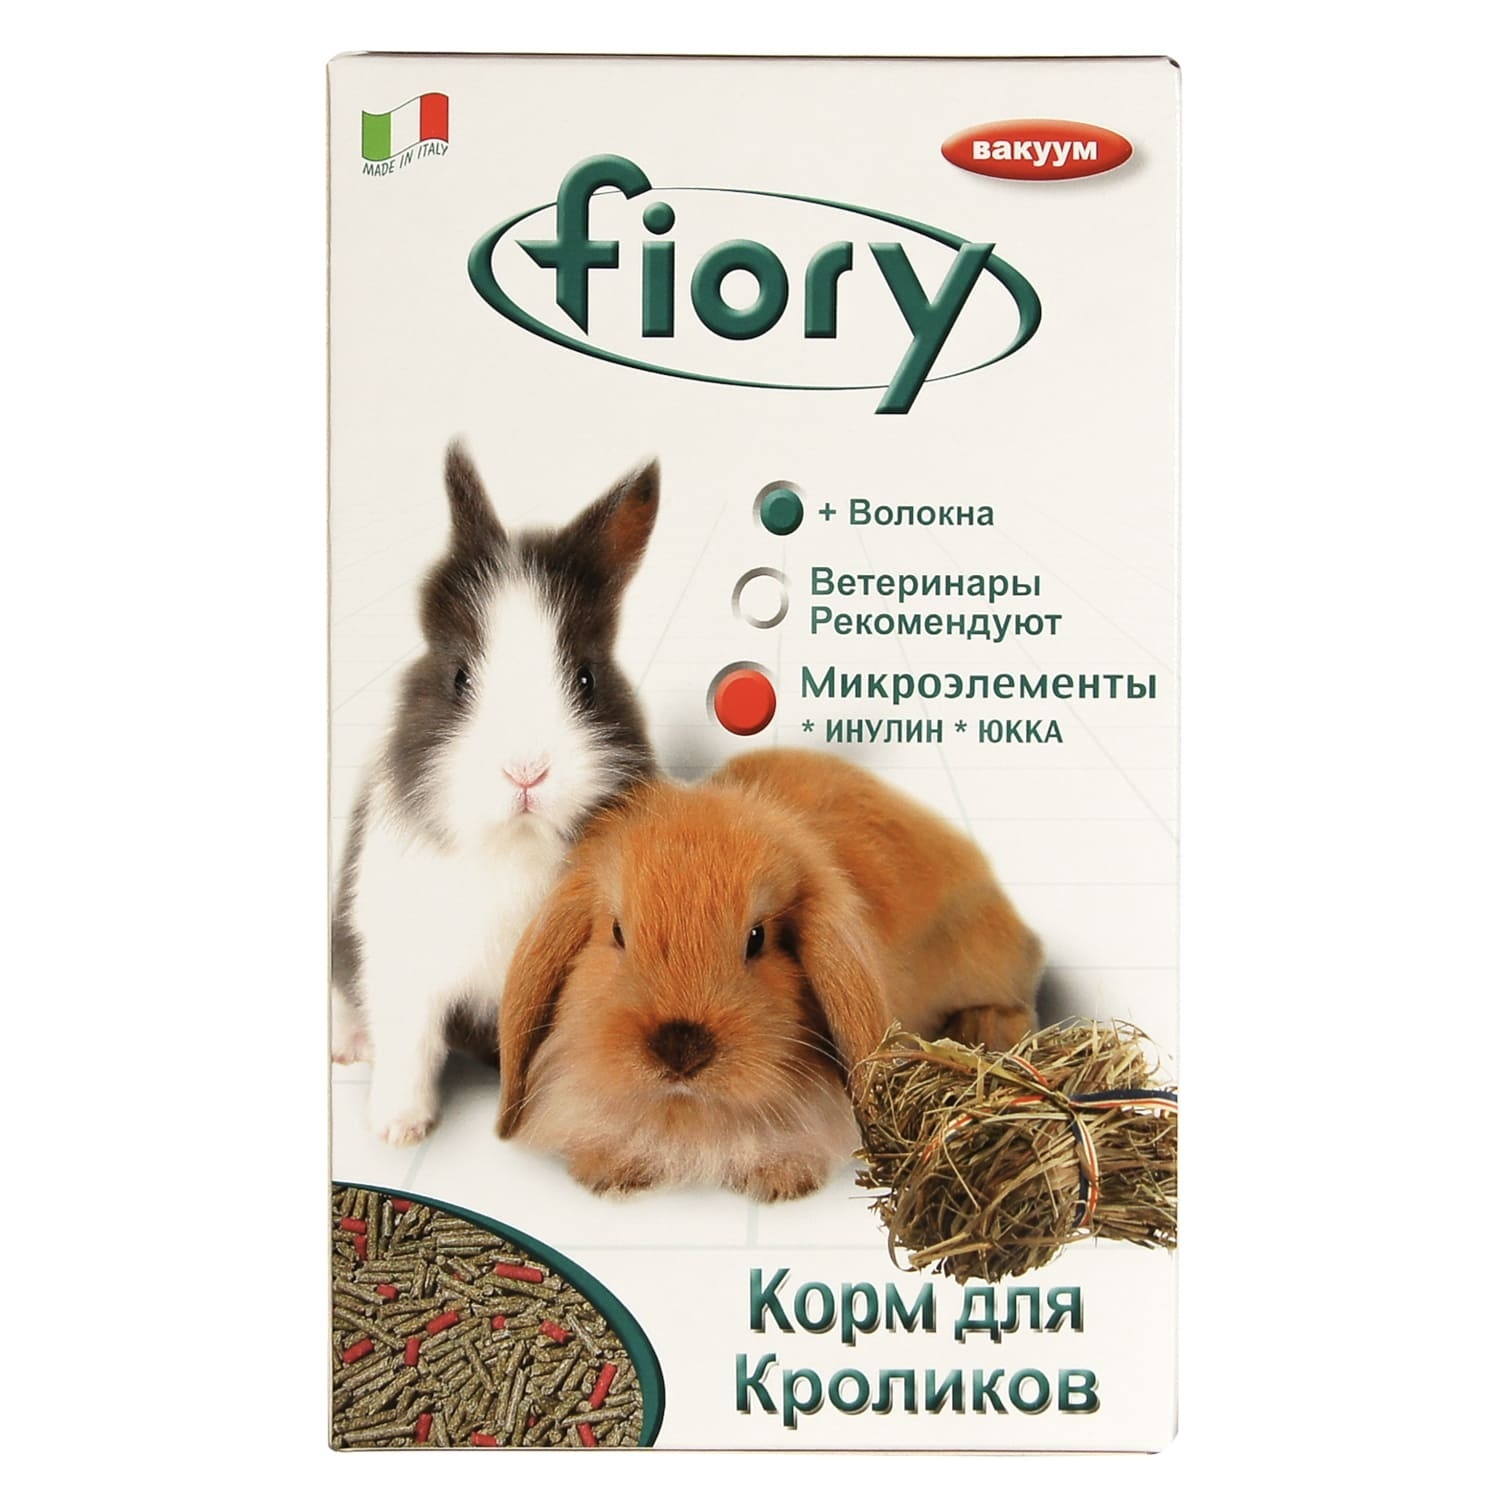 Fiory Fiory корм для кроликов, гранулированный (850 г) fiory корм для кроликов pellettato гранулированный 850 г